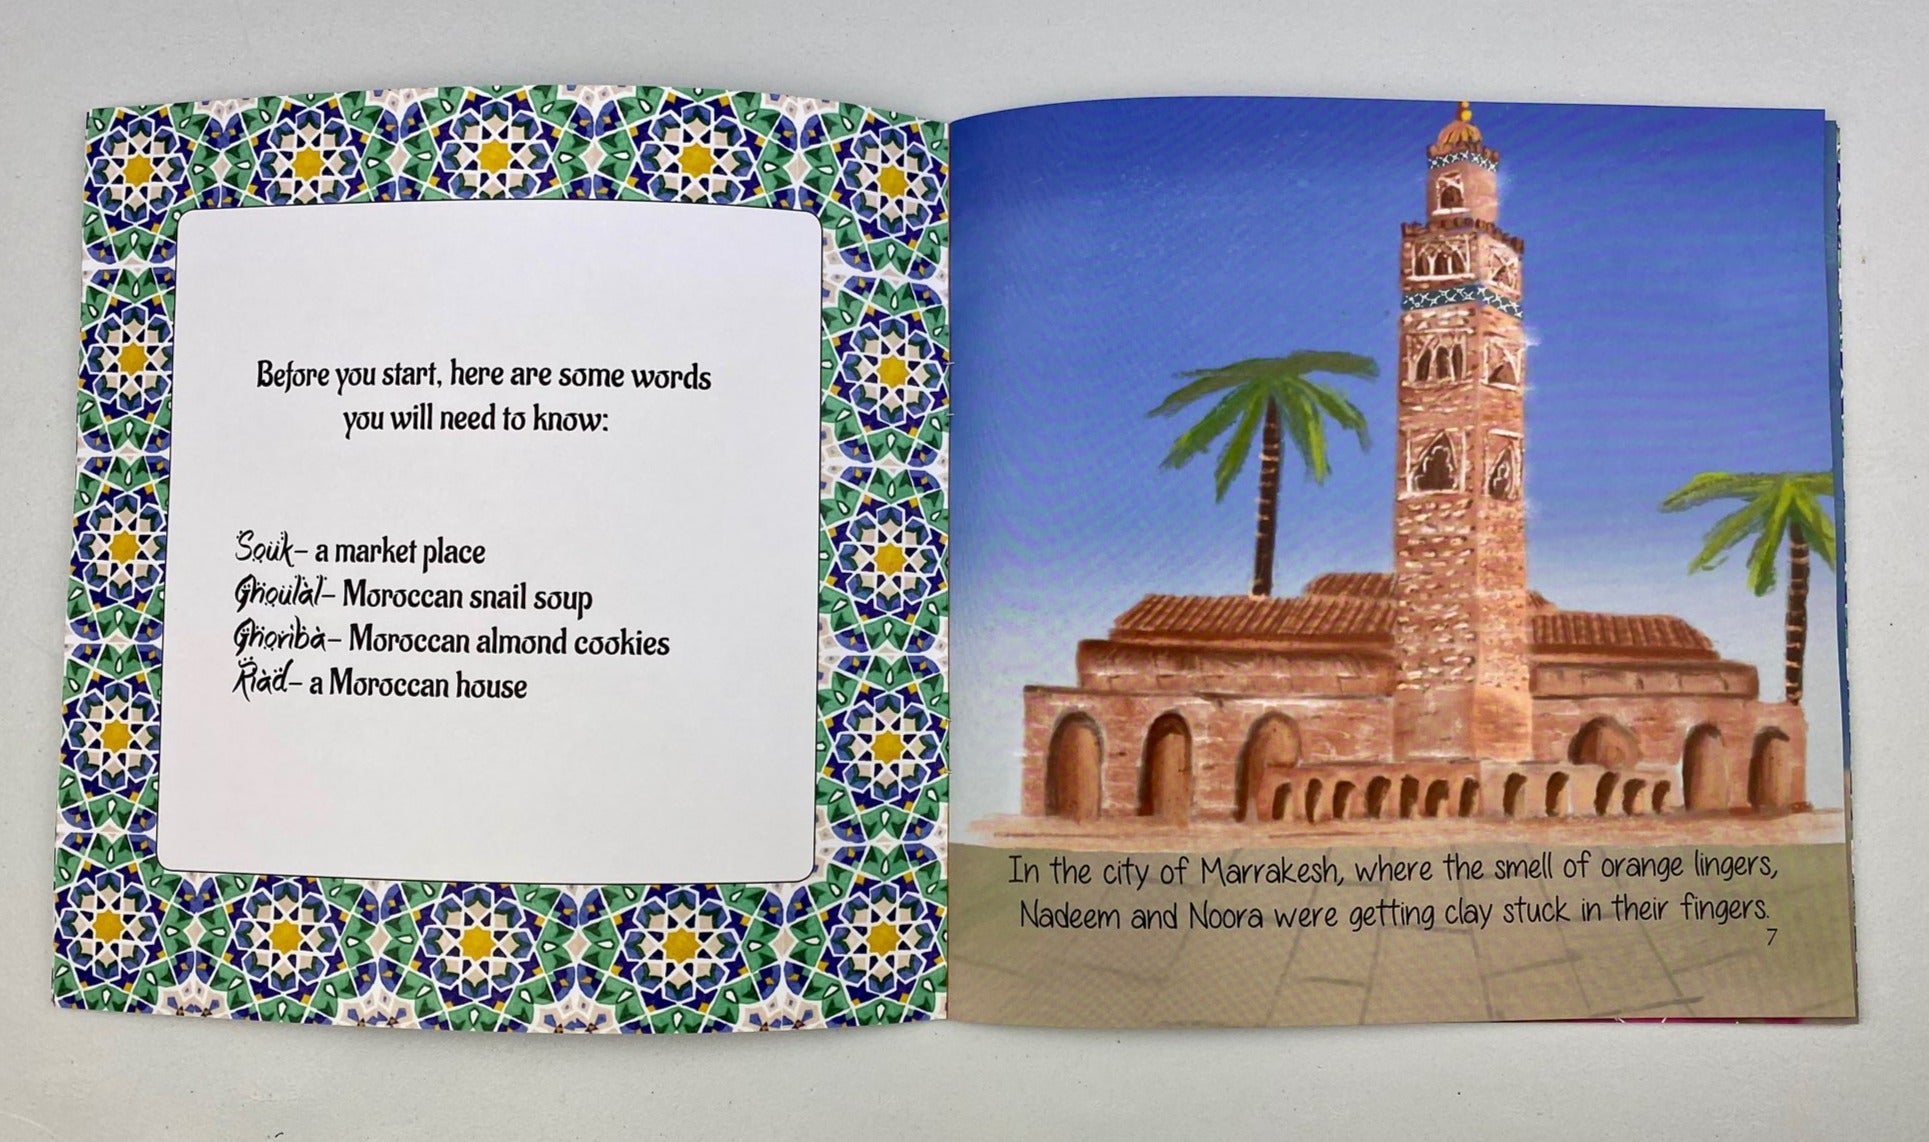 The Souk Surprise in Marrakesh (A wonderful story written by a Kiwi Muslim Teacher)